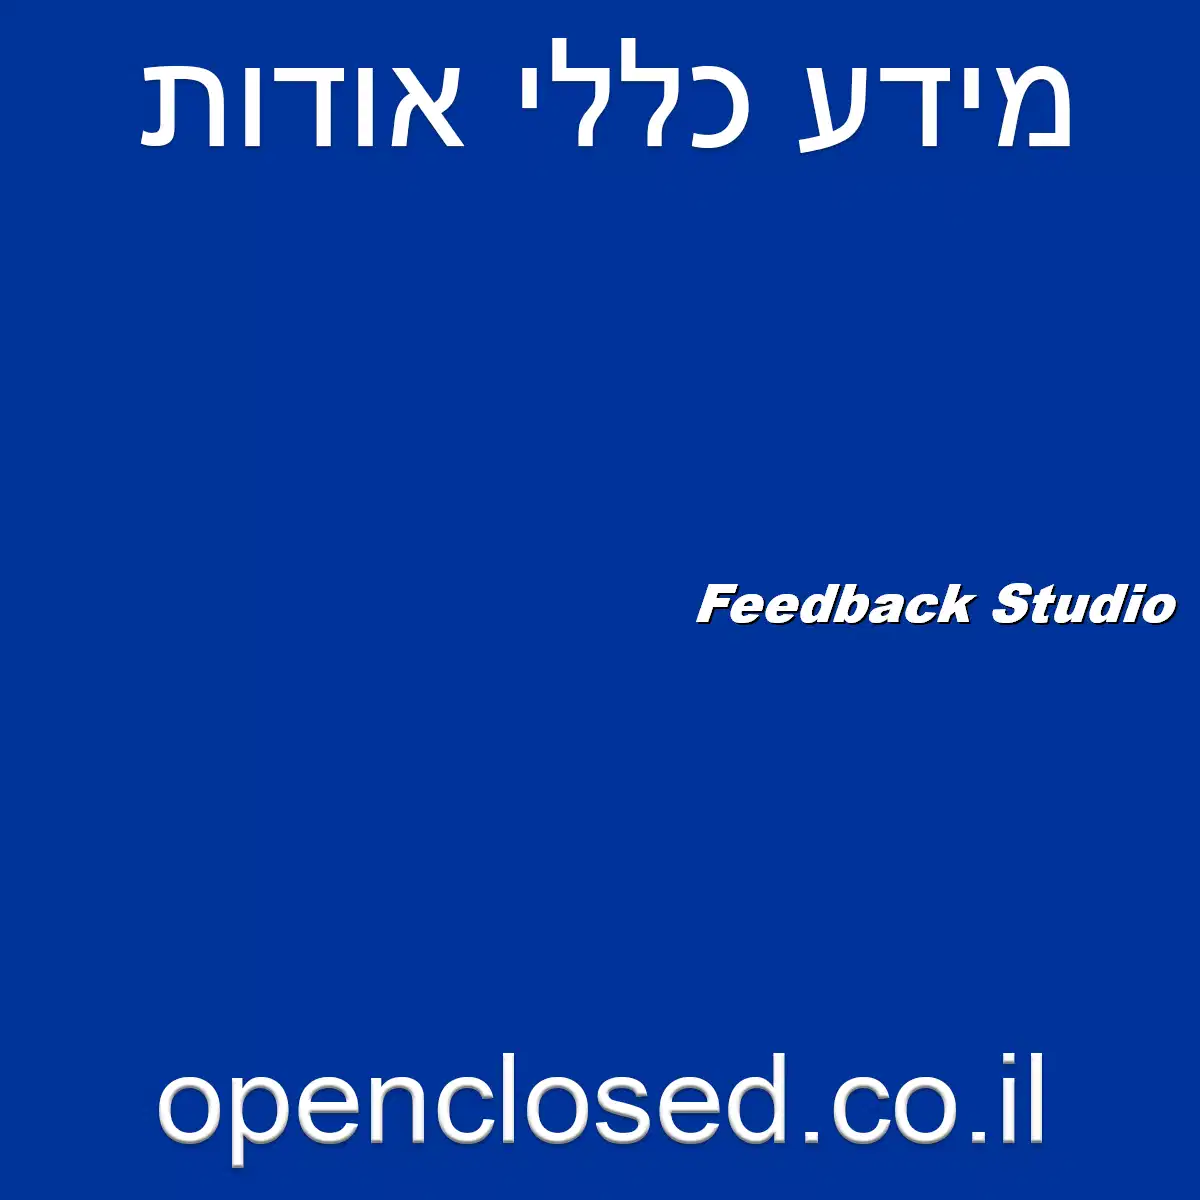 Feedback Studio